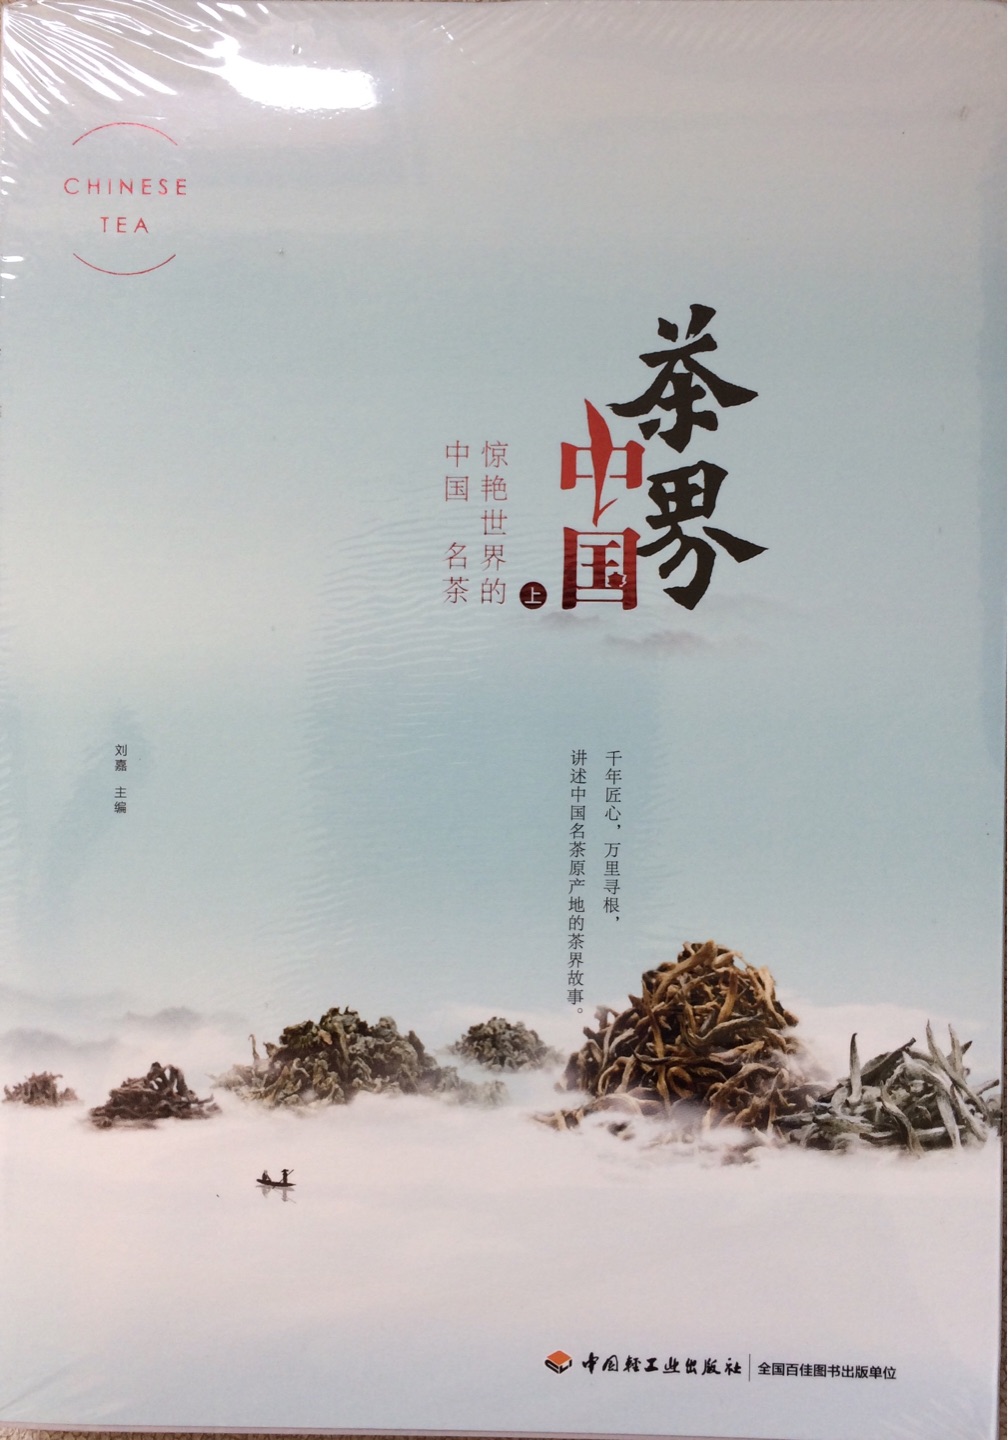 一本了解中国茶历史及文化的好书，好要慢慢读